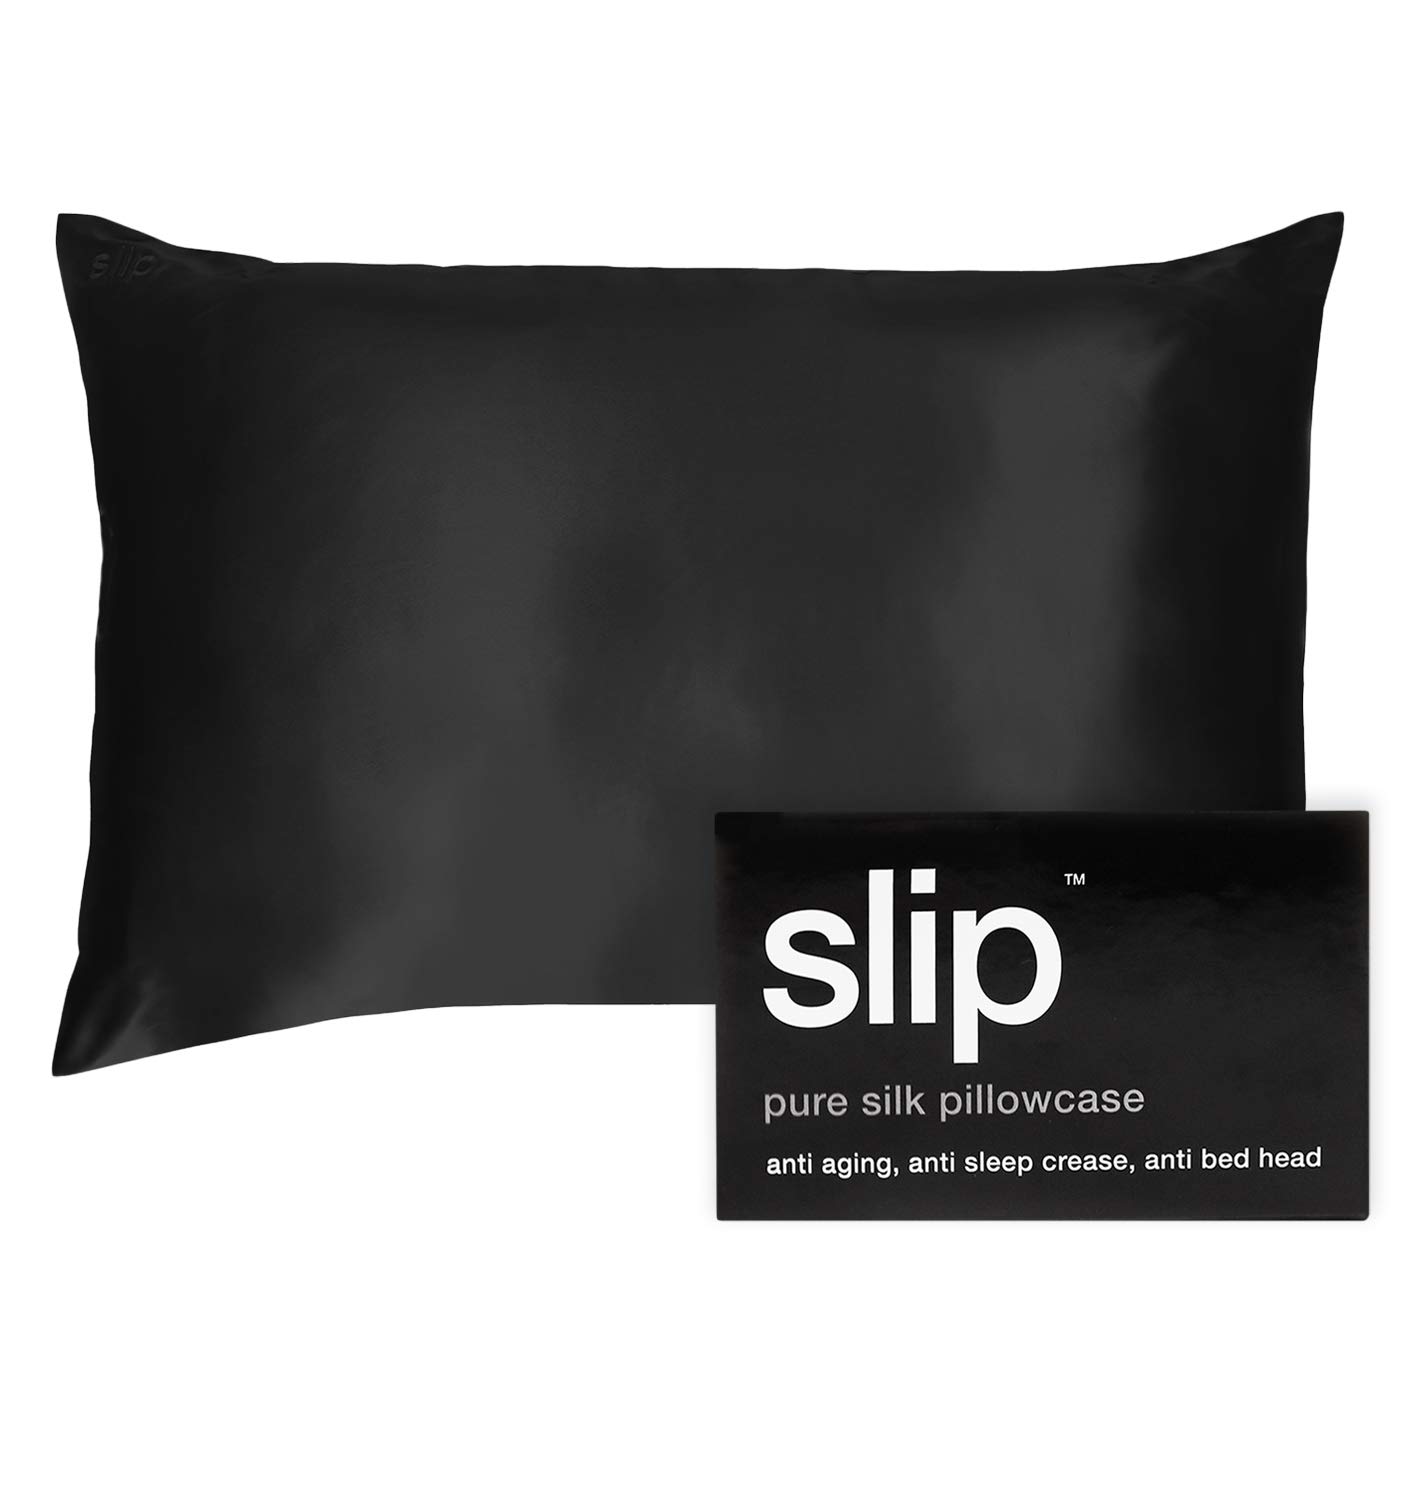 SLIP Silk Queen Pillowcase, Black (20" x 30") - 100% Pure 22 Momme Mulberry Silk Pillowcase - Anti-Aging, Anti-Bedhead, Anti-Sleep Crease